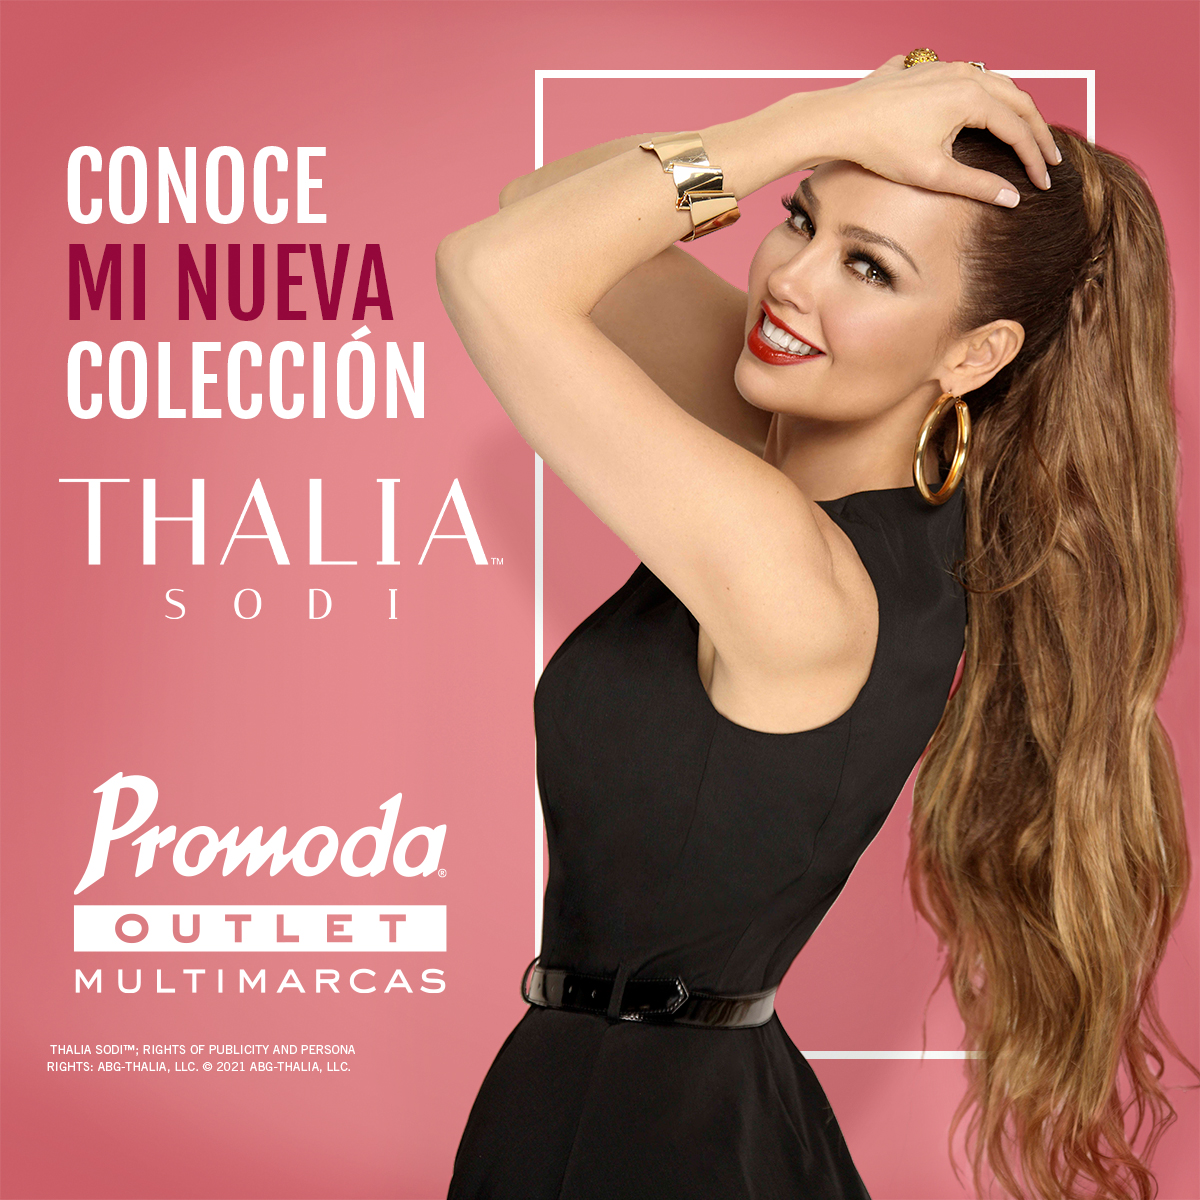 Promoda on Twitter: "Jeans, blusas, con colores de temporada y es lo vas encontrar con la nueva colección Thalía Sodi. ¡Descúbrela en tiendas seleccionadas! Encuentra en este link